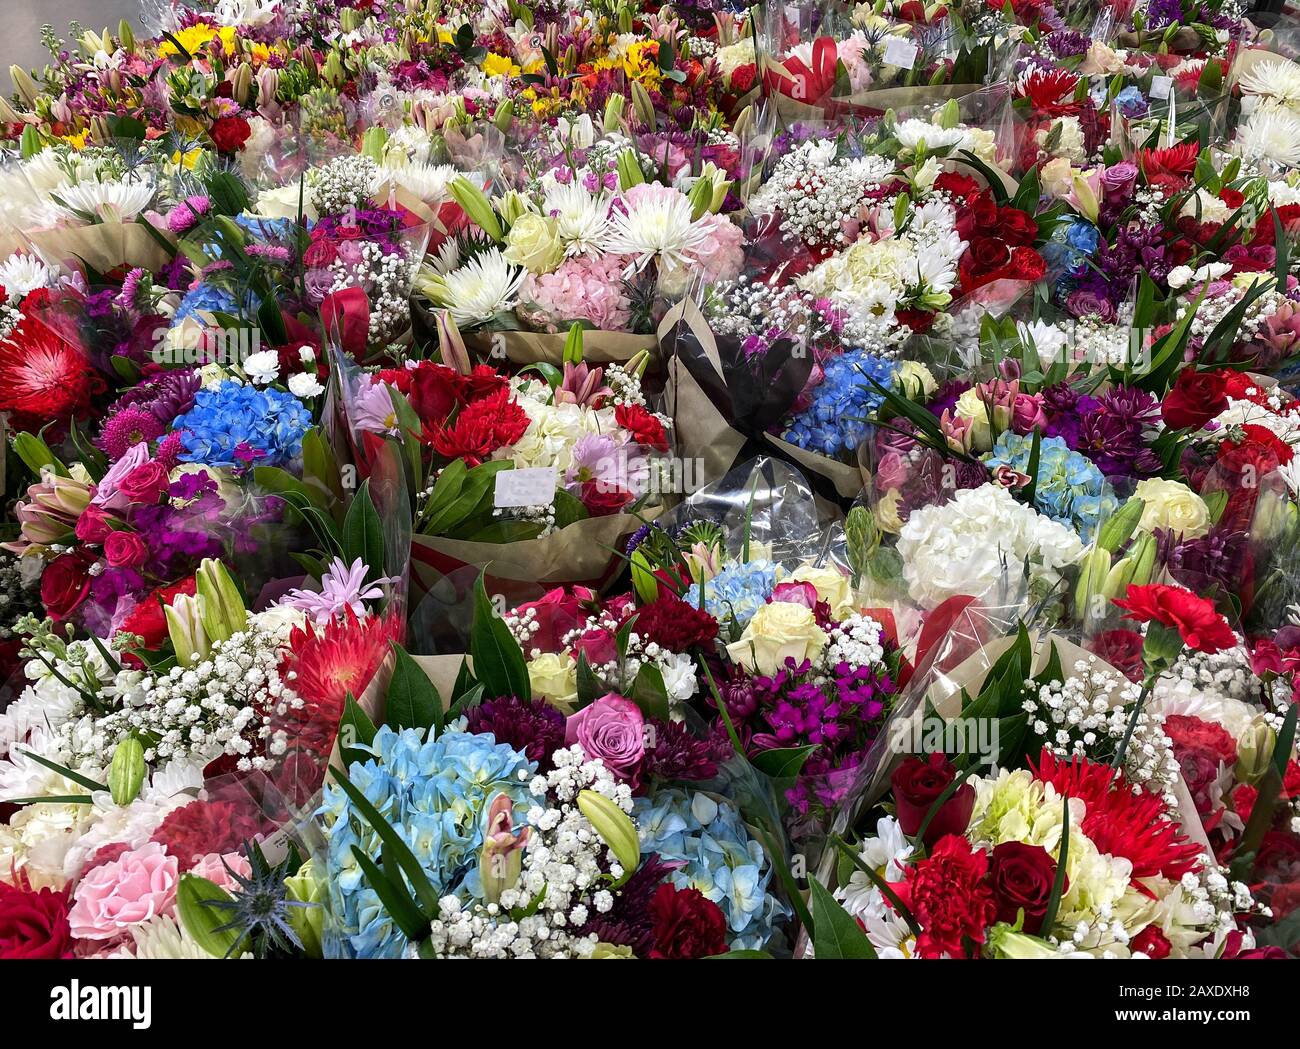 Plusieurs bouquets de différentes fleurs à une épicerie dans l'eau attendant qu'un client les achète. Concept amour, romance, anniversaire, valentin Banque D'Images